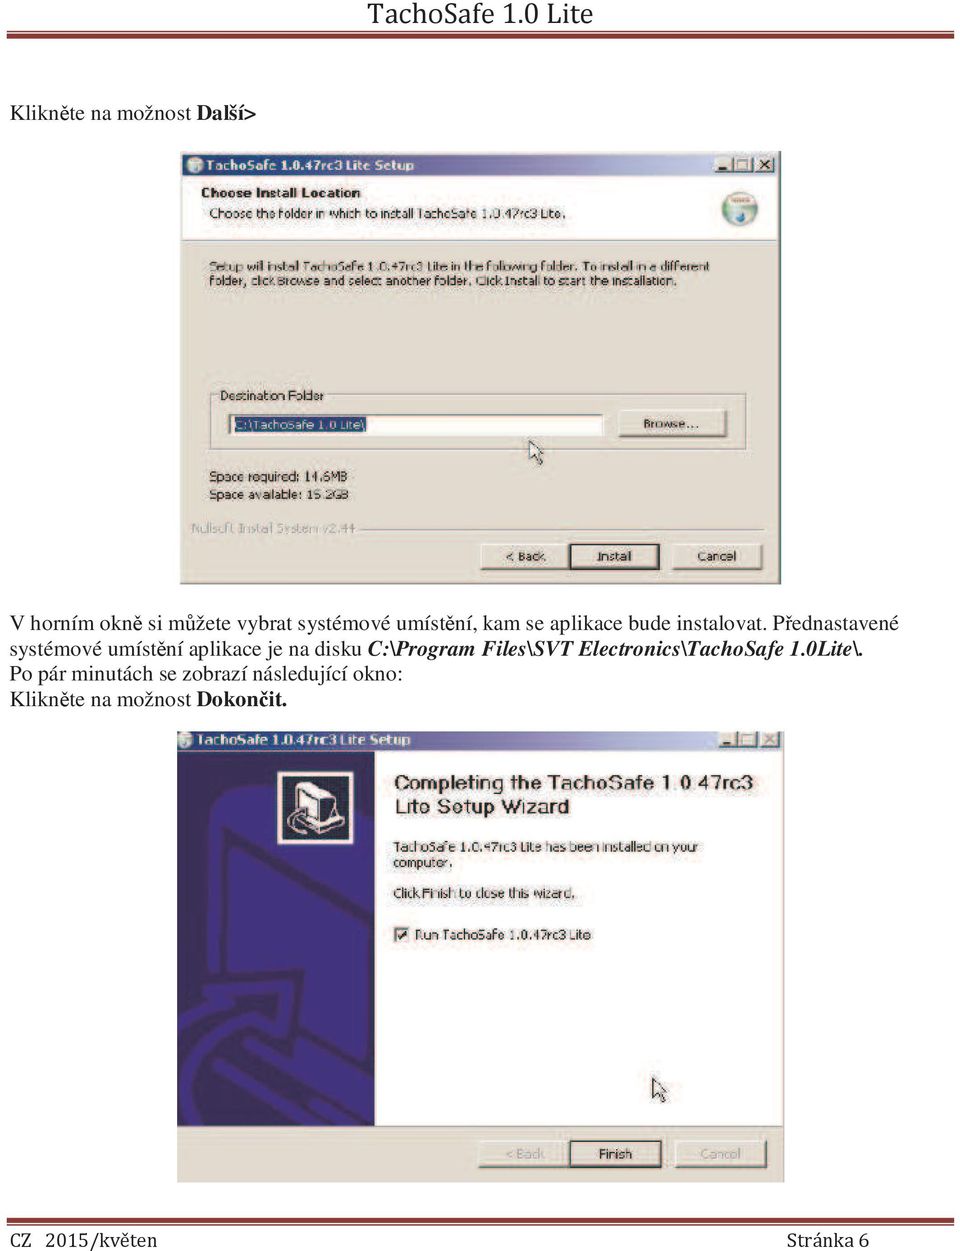 Přednastavené systémové umístění aplikace je na disku C:\Program Files\SVT